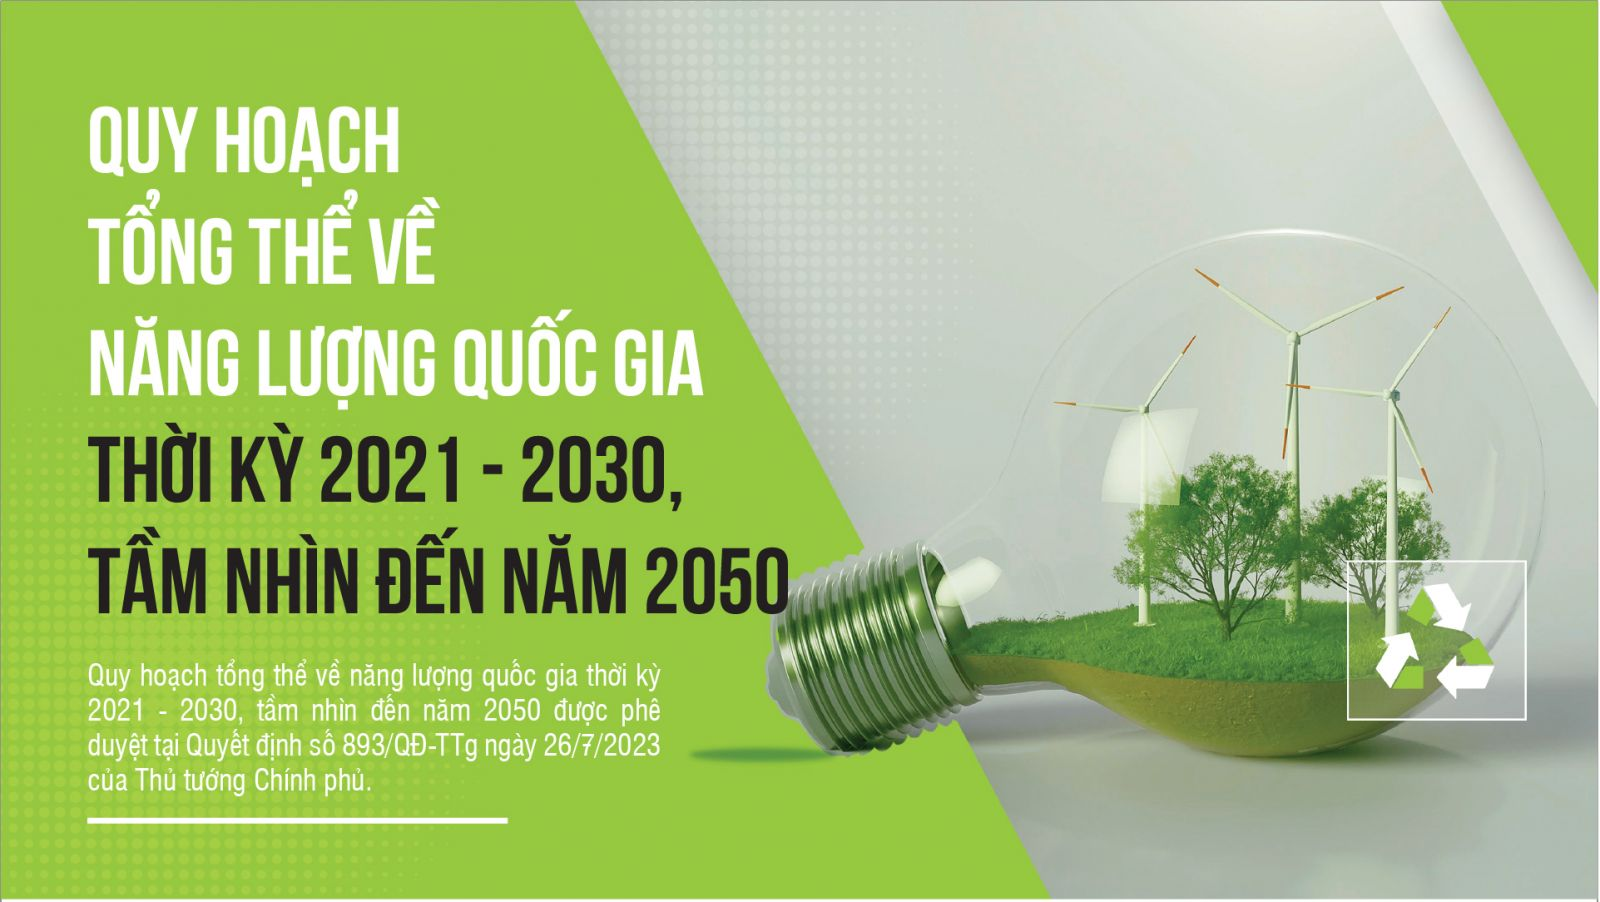 Ngày 26/7/2023, Phó Thủ tướng Trần Hồng Hà đã ký Quyết định số 893/QĐ-TTg phê duyệt Quy hoạch tổng thể về năng lượng quốc gia thời kỳ 2021 - 2030, tầm nhìn đến năm 2050, với nội dung chủ yếu sau: